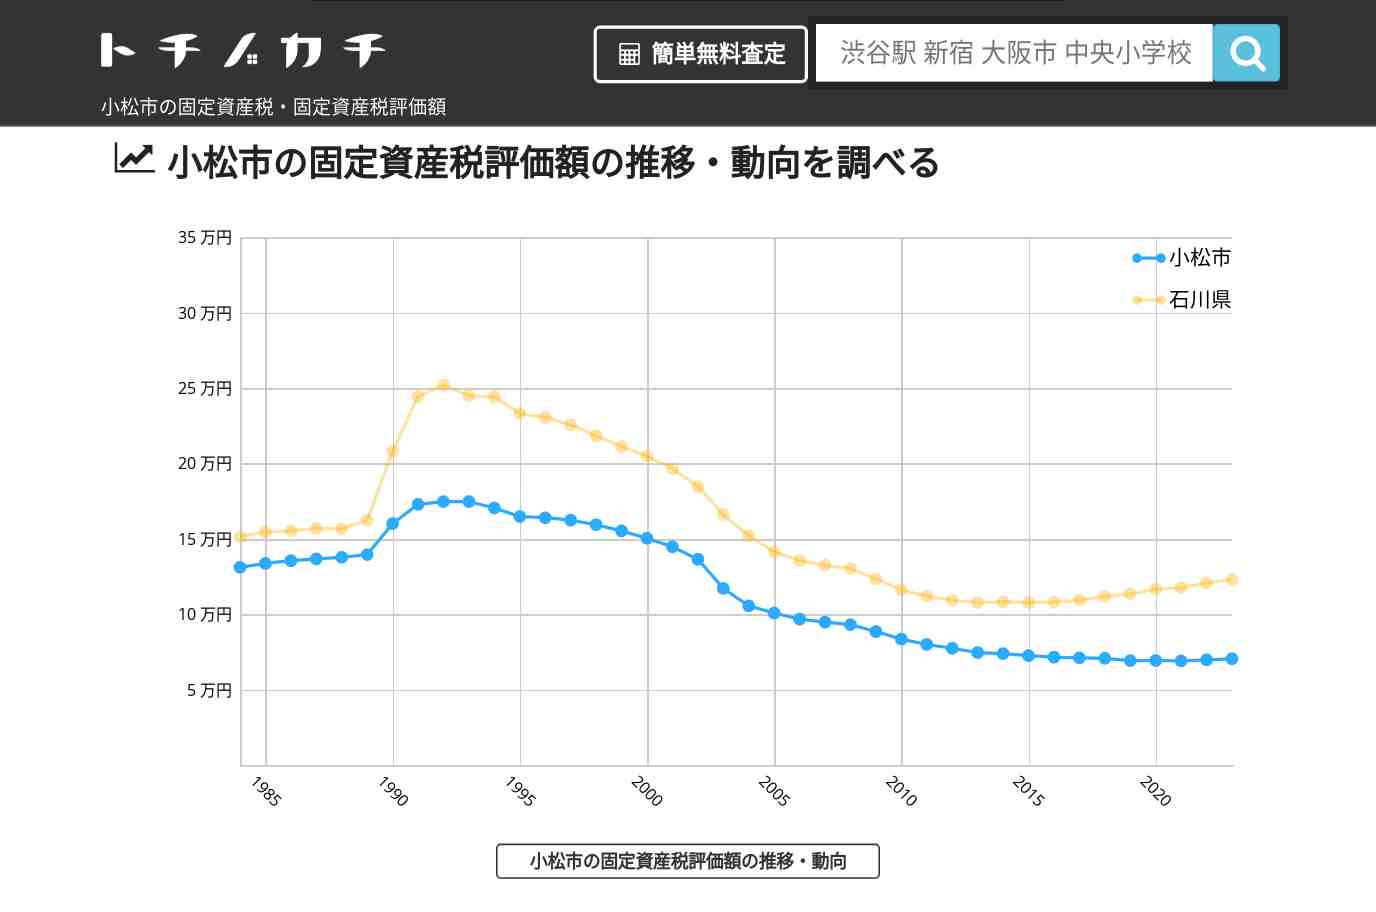 中海小学校(石川県 小松市)周辺の固定資産税・固定資産税評価額 | トチノカチ